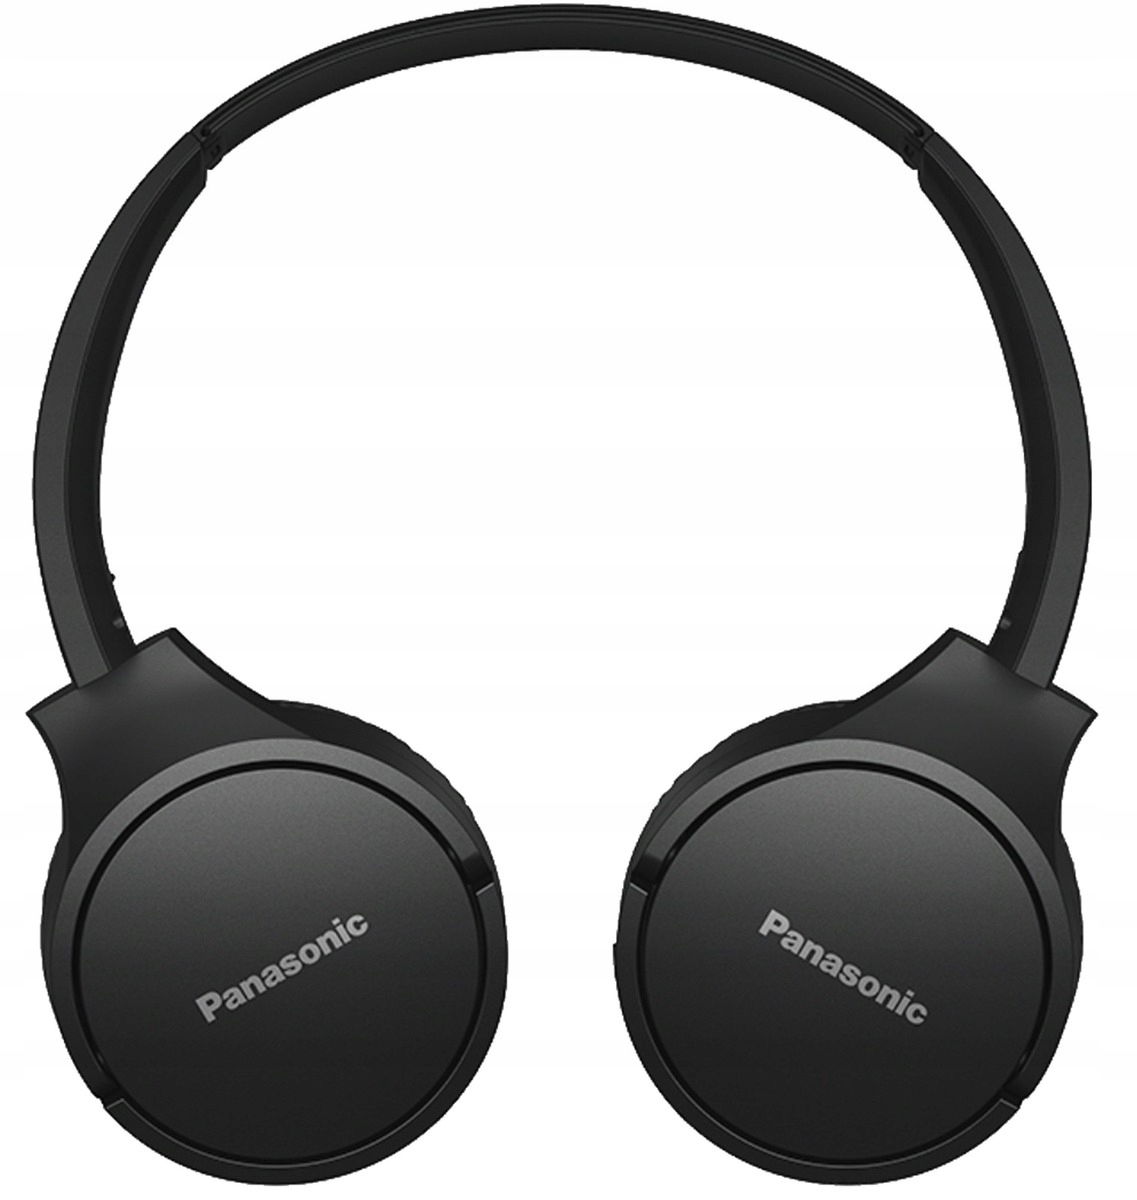 Panasonic bezdrátová sluchátka přes uši RB-HF420BE-K